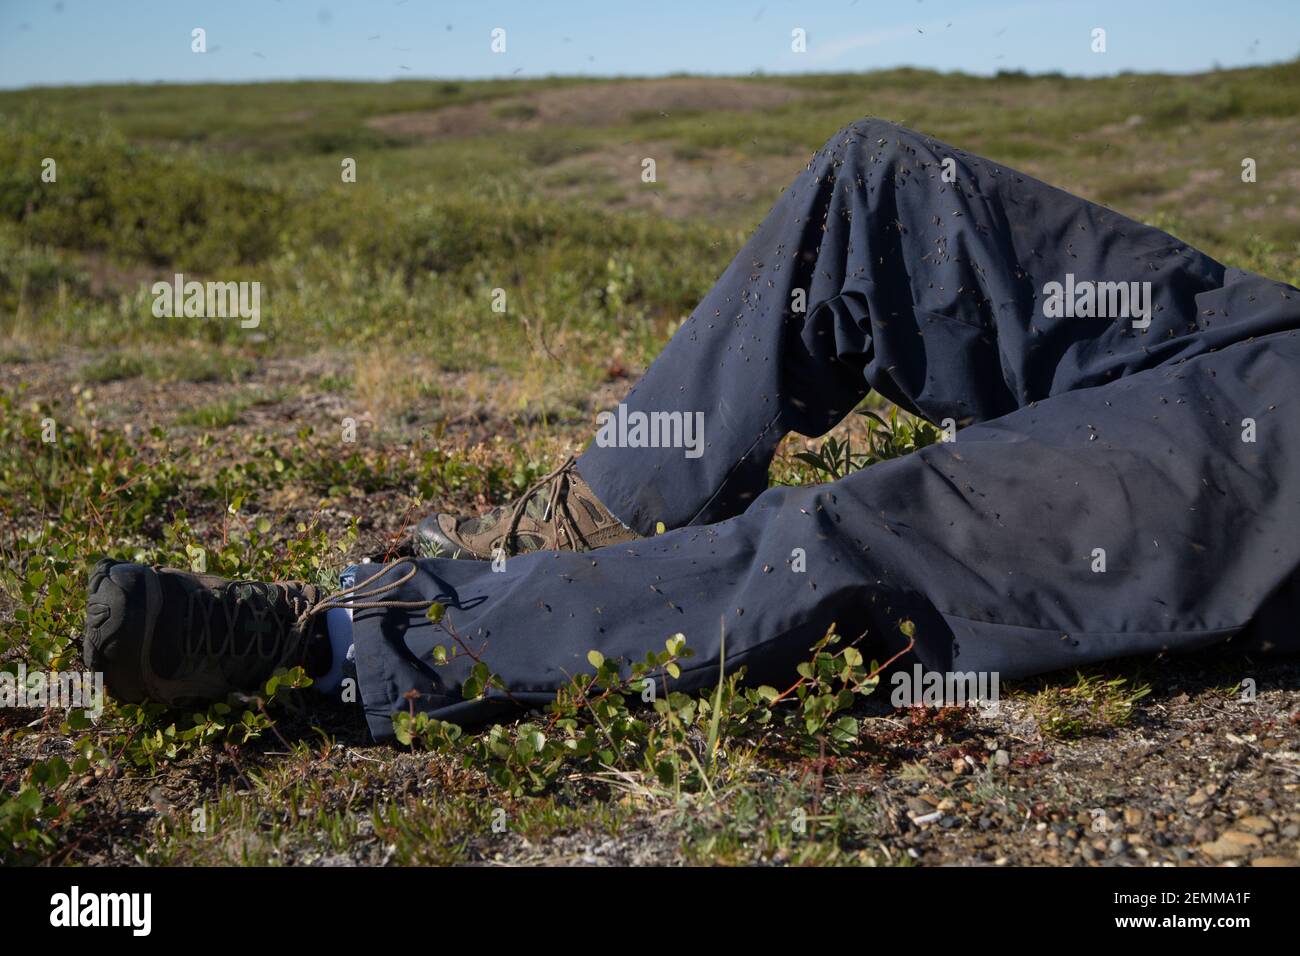 Gros plan des jambes de pantalon de l'homme recouvertes de moustiques, qui se trouvent sur la toundra arctique en été, dans les Territoires du Nord-Ouest, dans l'Arctique canadien. Banque D'Images